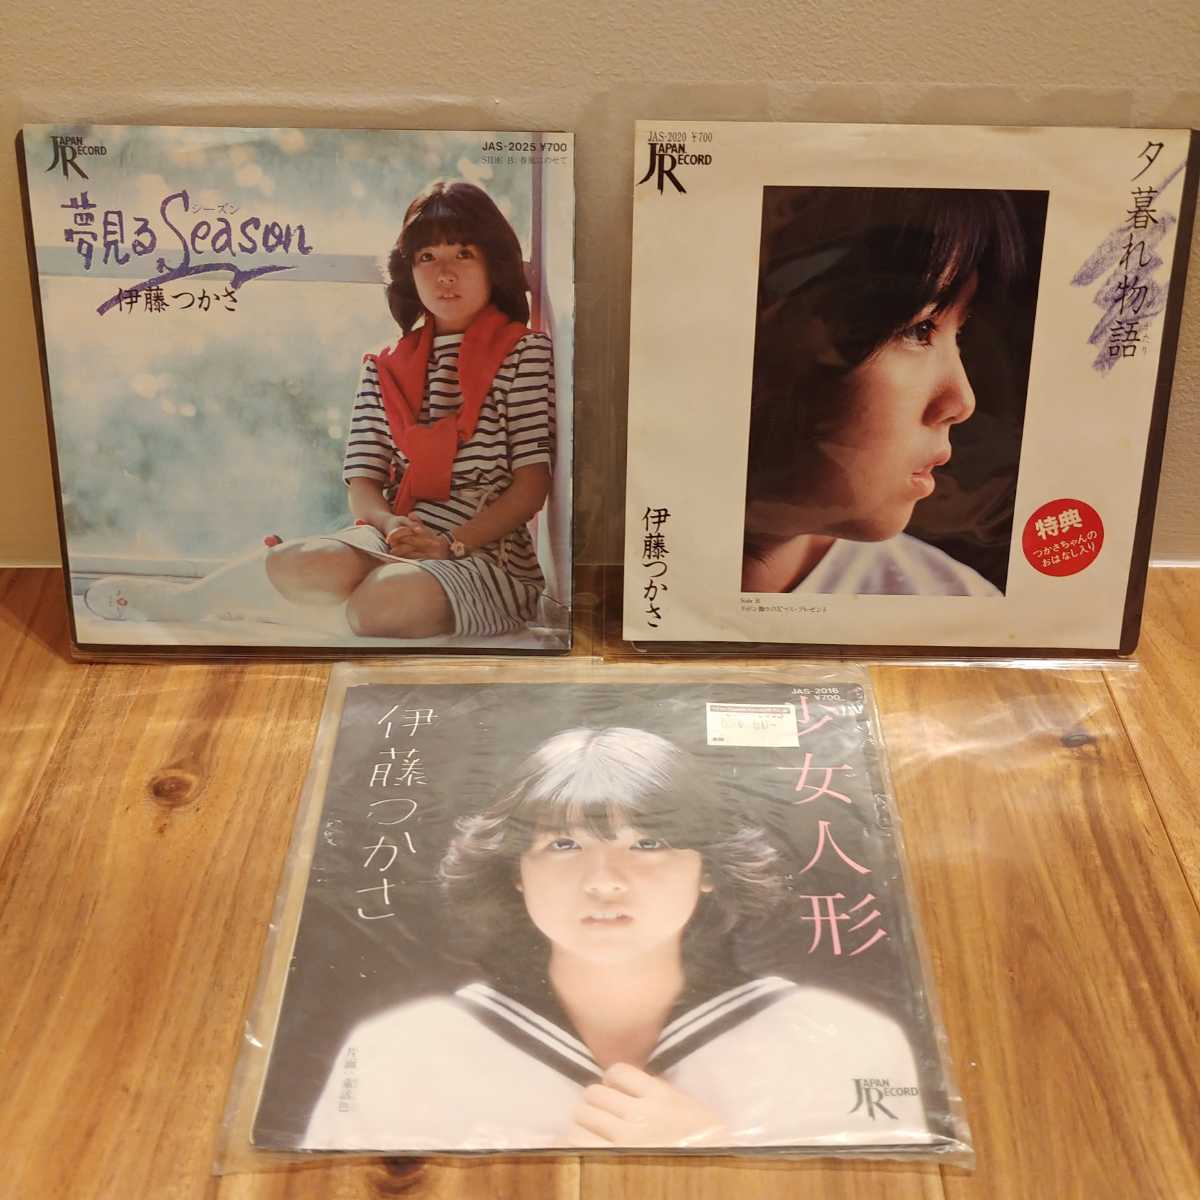  Ito Tsukasa single record 3 pieces set 